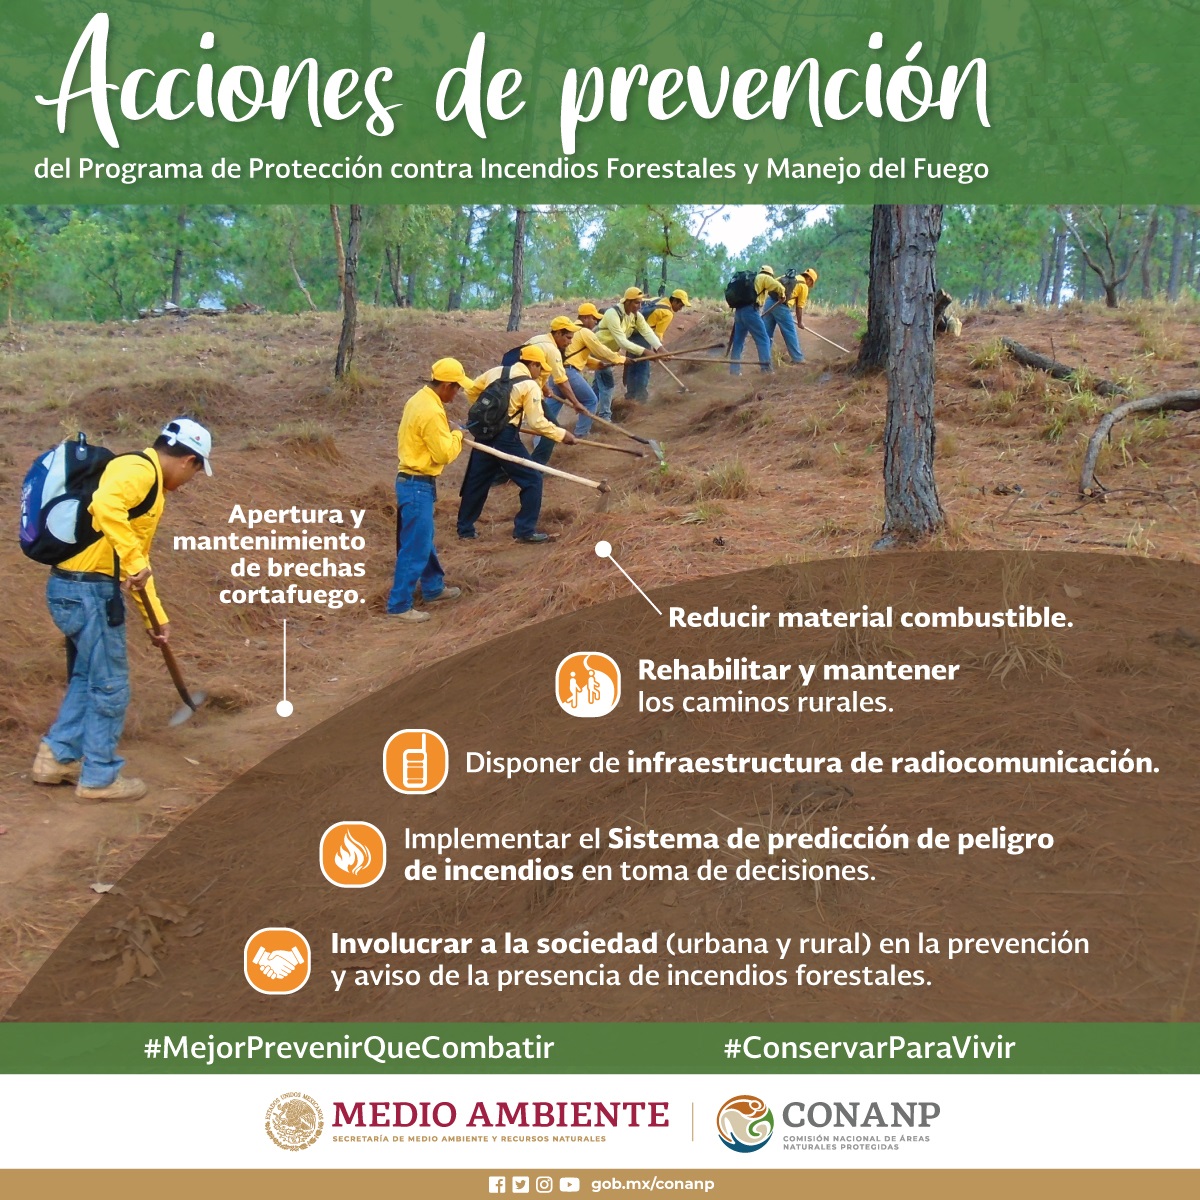 /cms/uploads/image/file/636392/Infograf_a_Acciones-de-Prevenci_n-del-Programa-contra-Incendios-Forestales-y-Manejo-de-Fuego_2.jpg